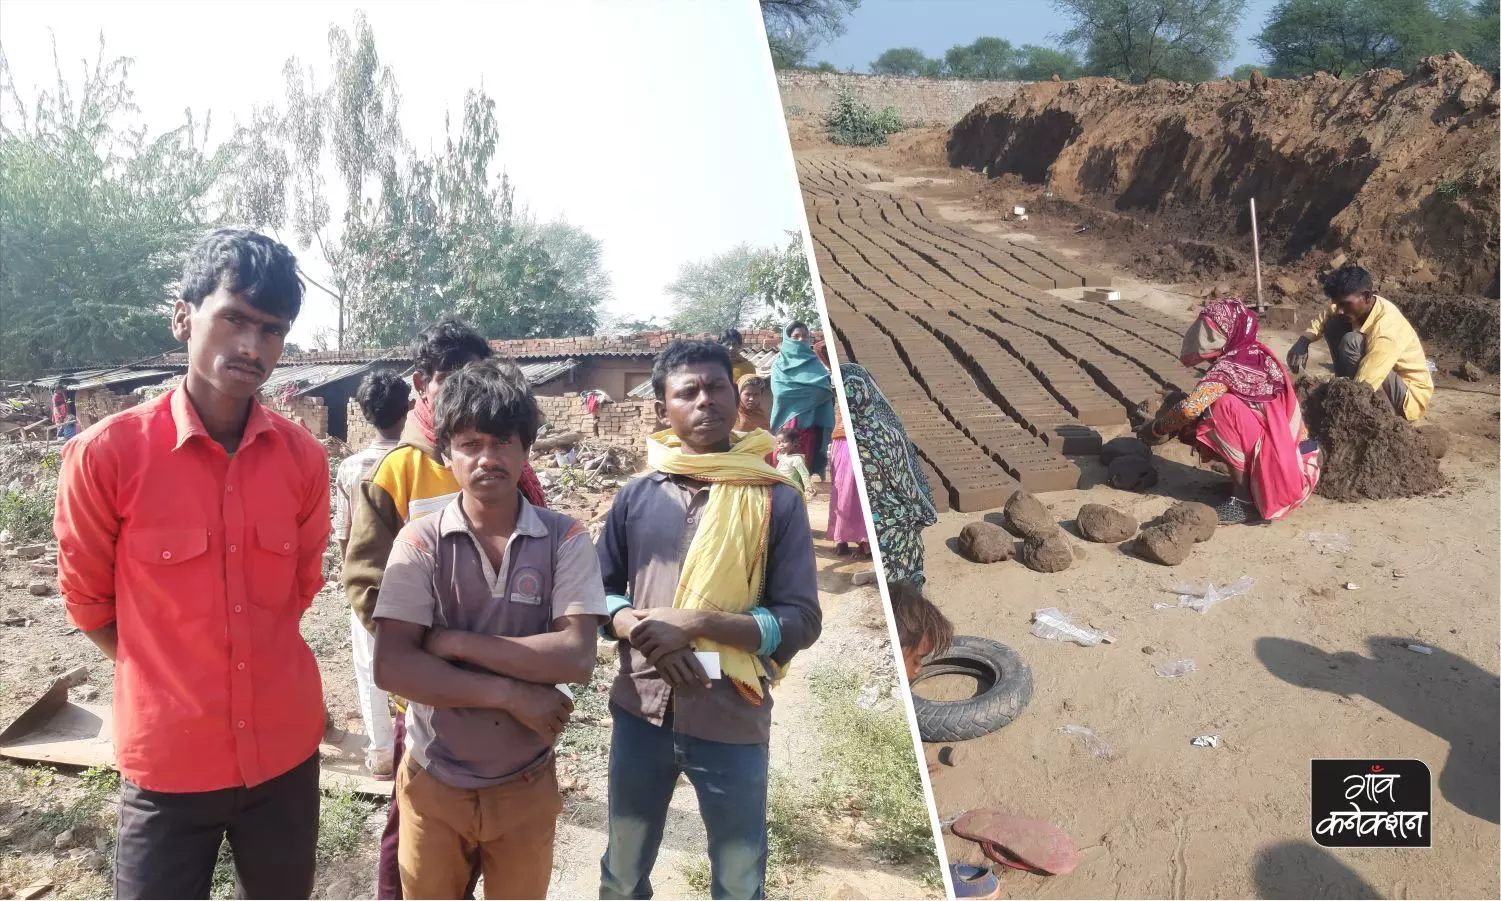 ईंट-भट्टा मजदूरः आर्थिक जरुरतों के लिए पेशगी के चक्र में फंसे आज़ाद भारत के नए गुलाम